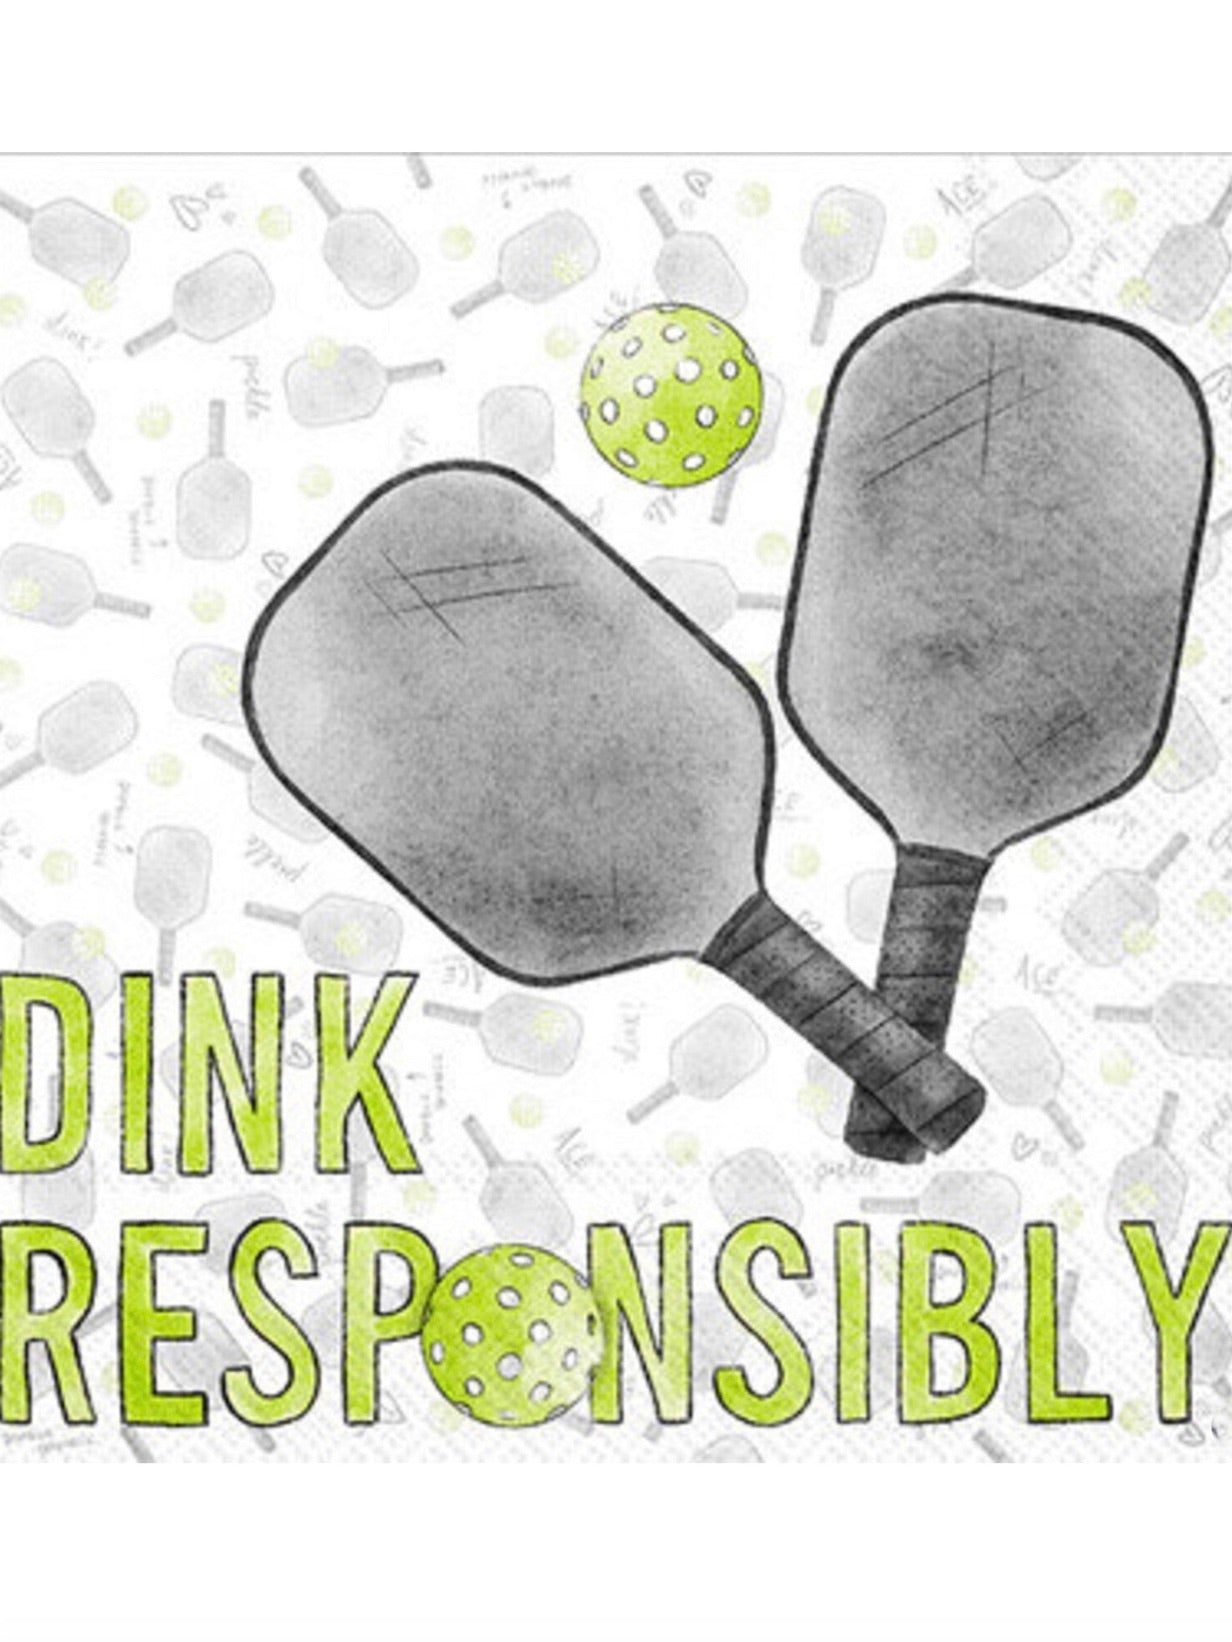 Dink Responsibly Cocktail Napkins